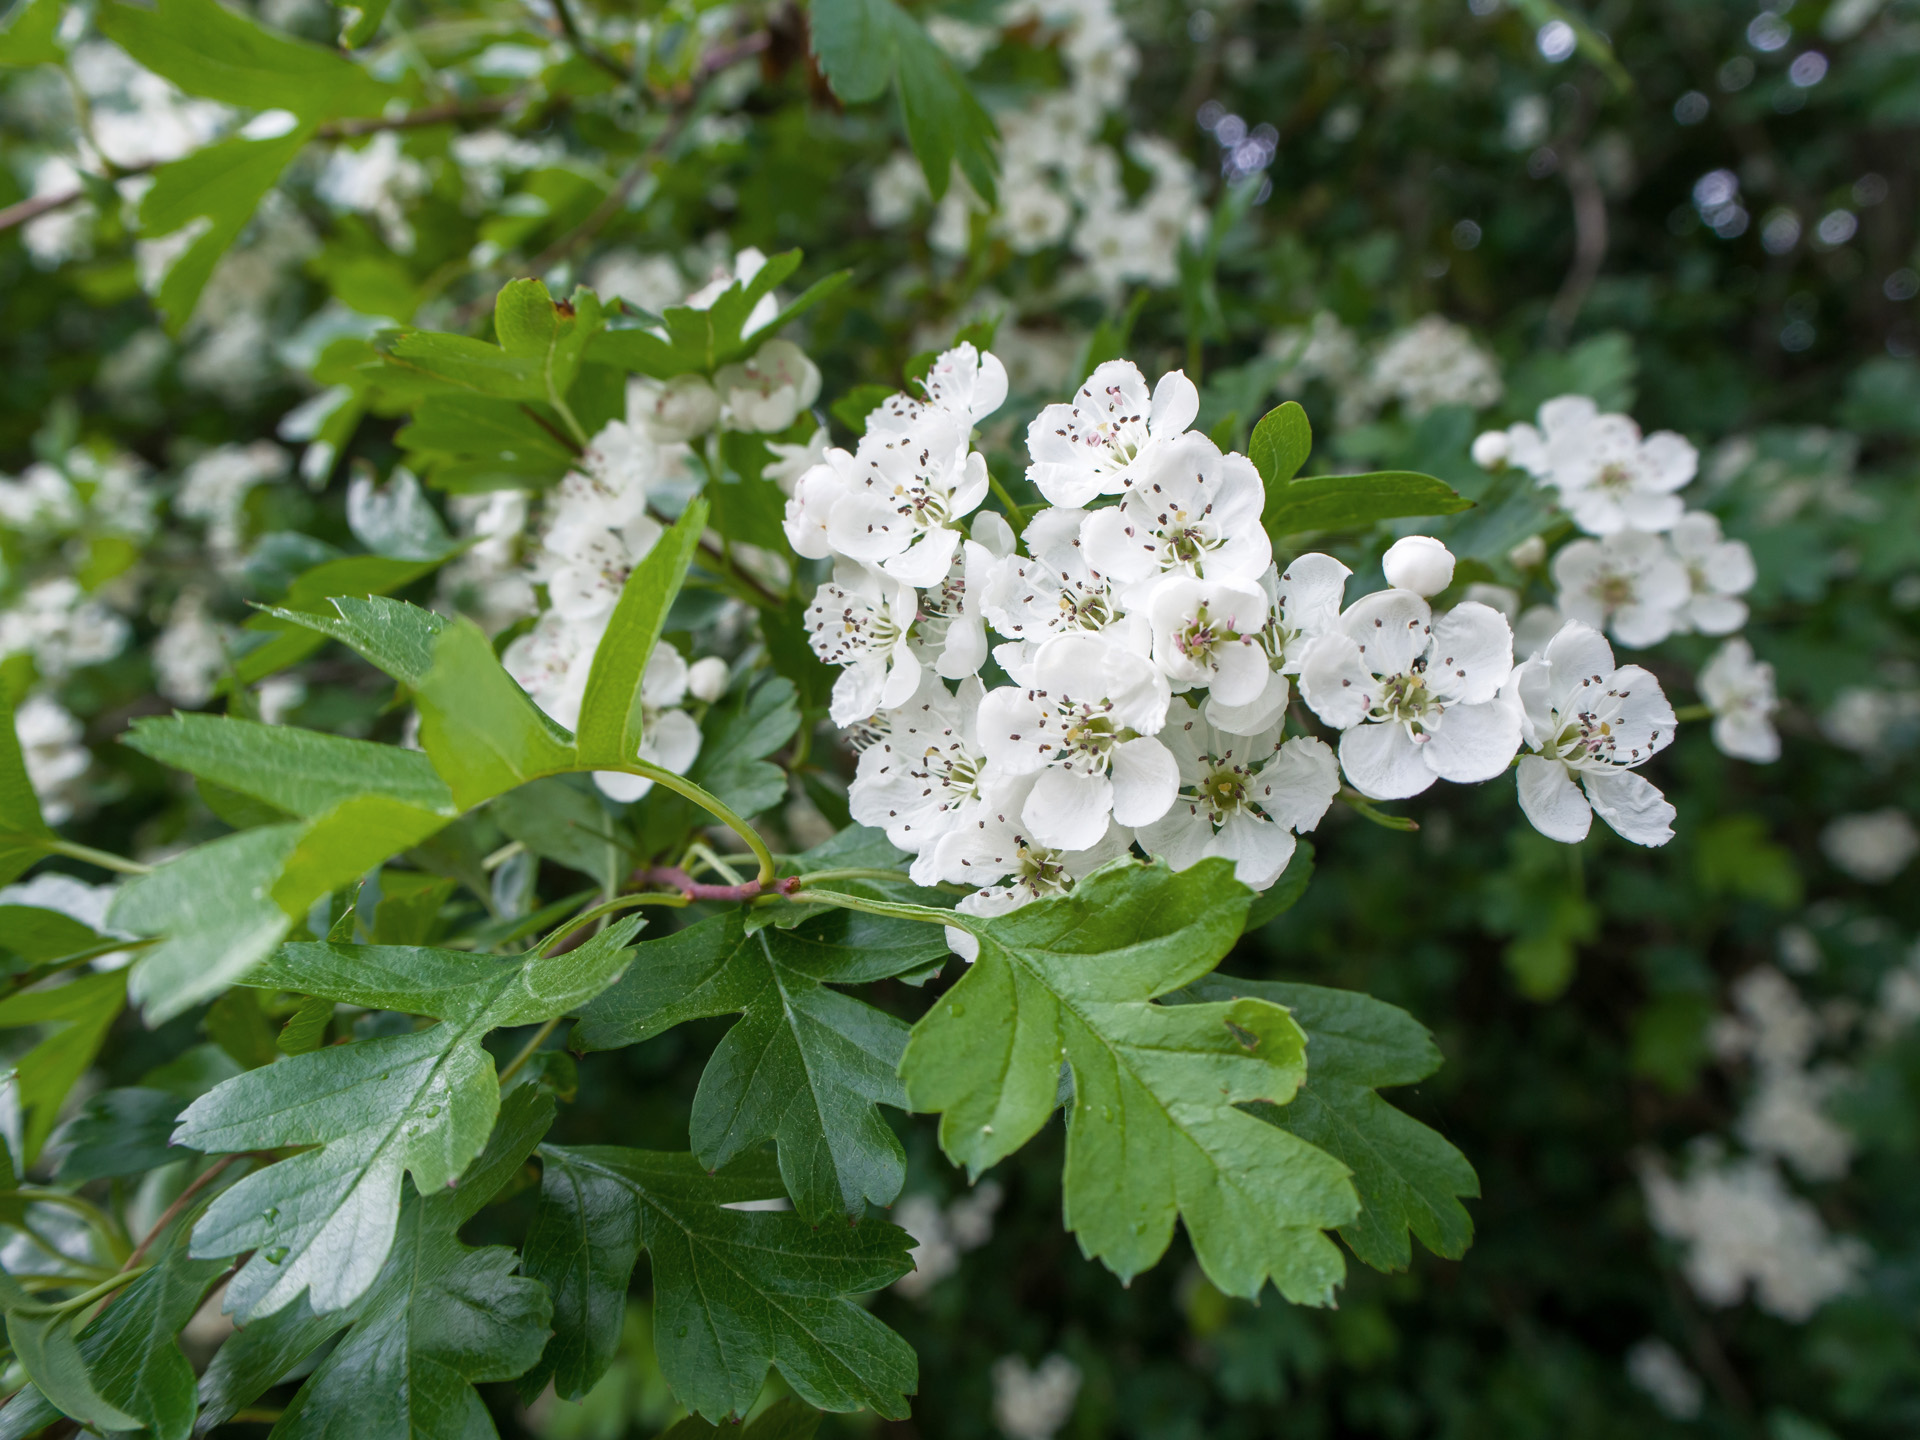 Primer plano de las flores blancas y las hojas verdes de un seto de espino blanco